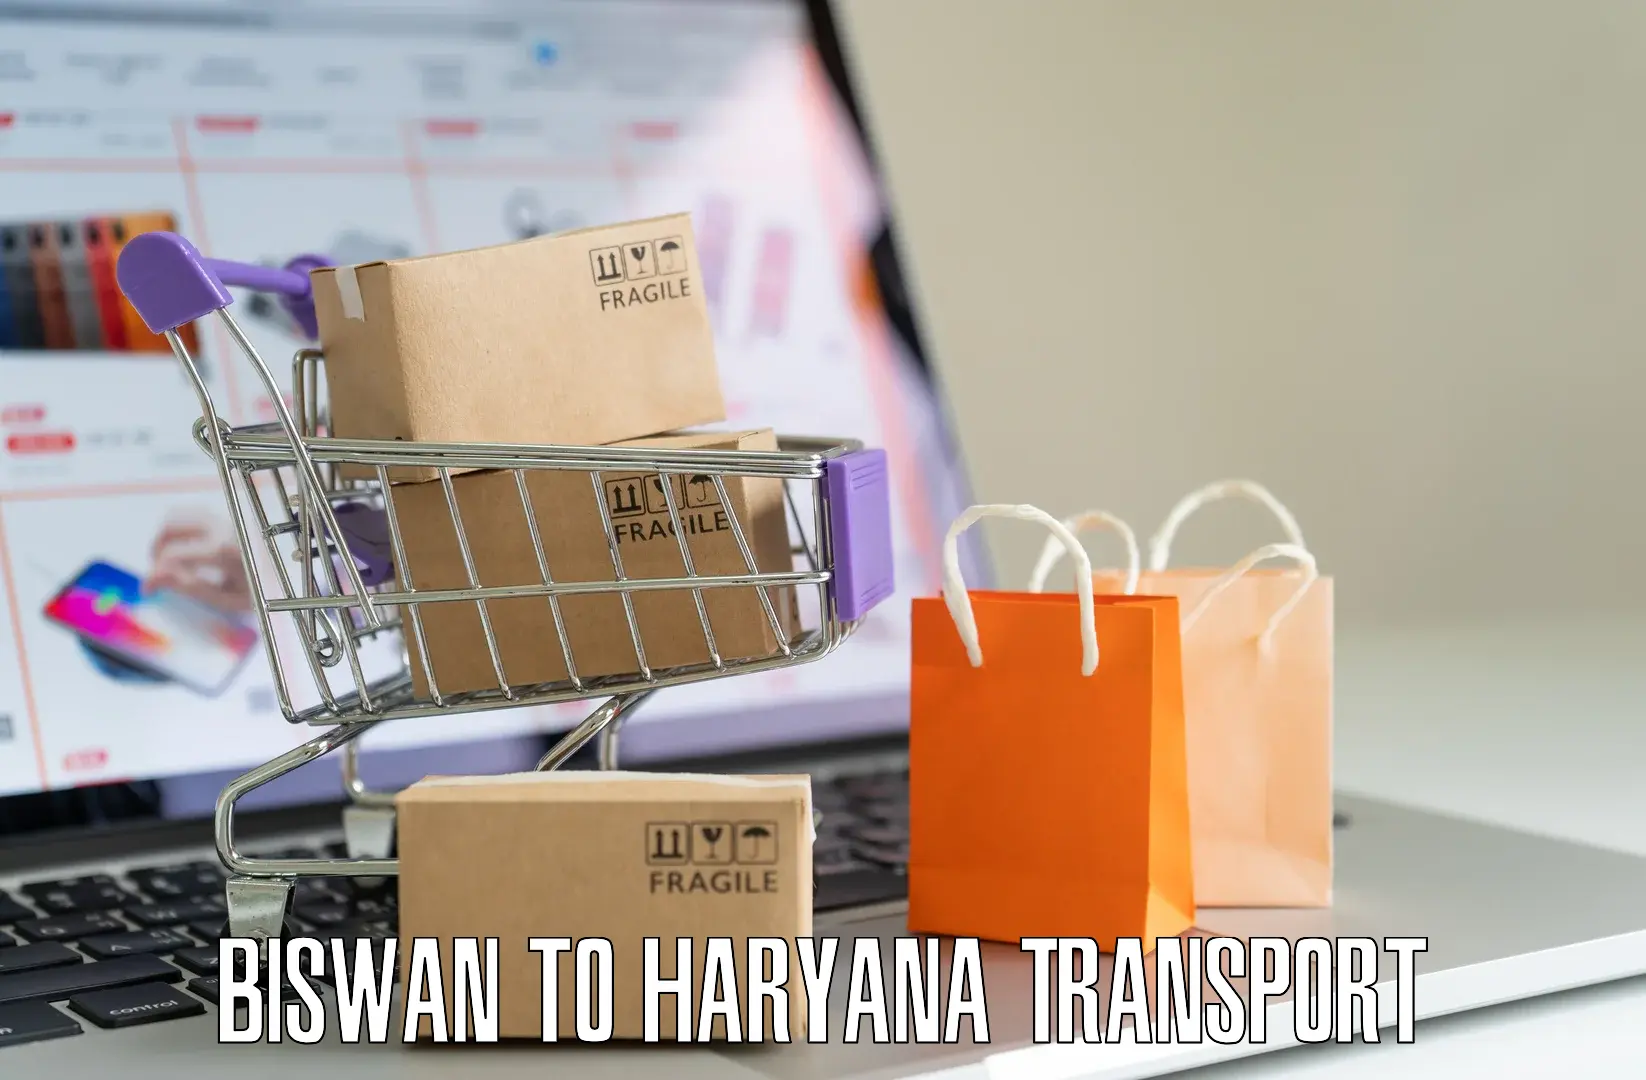 Online transport booking Biswan to Panipat